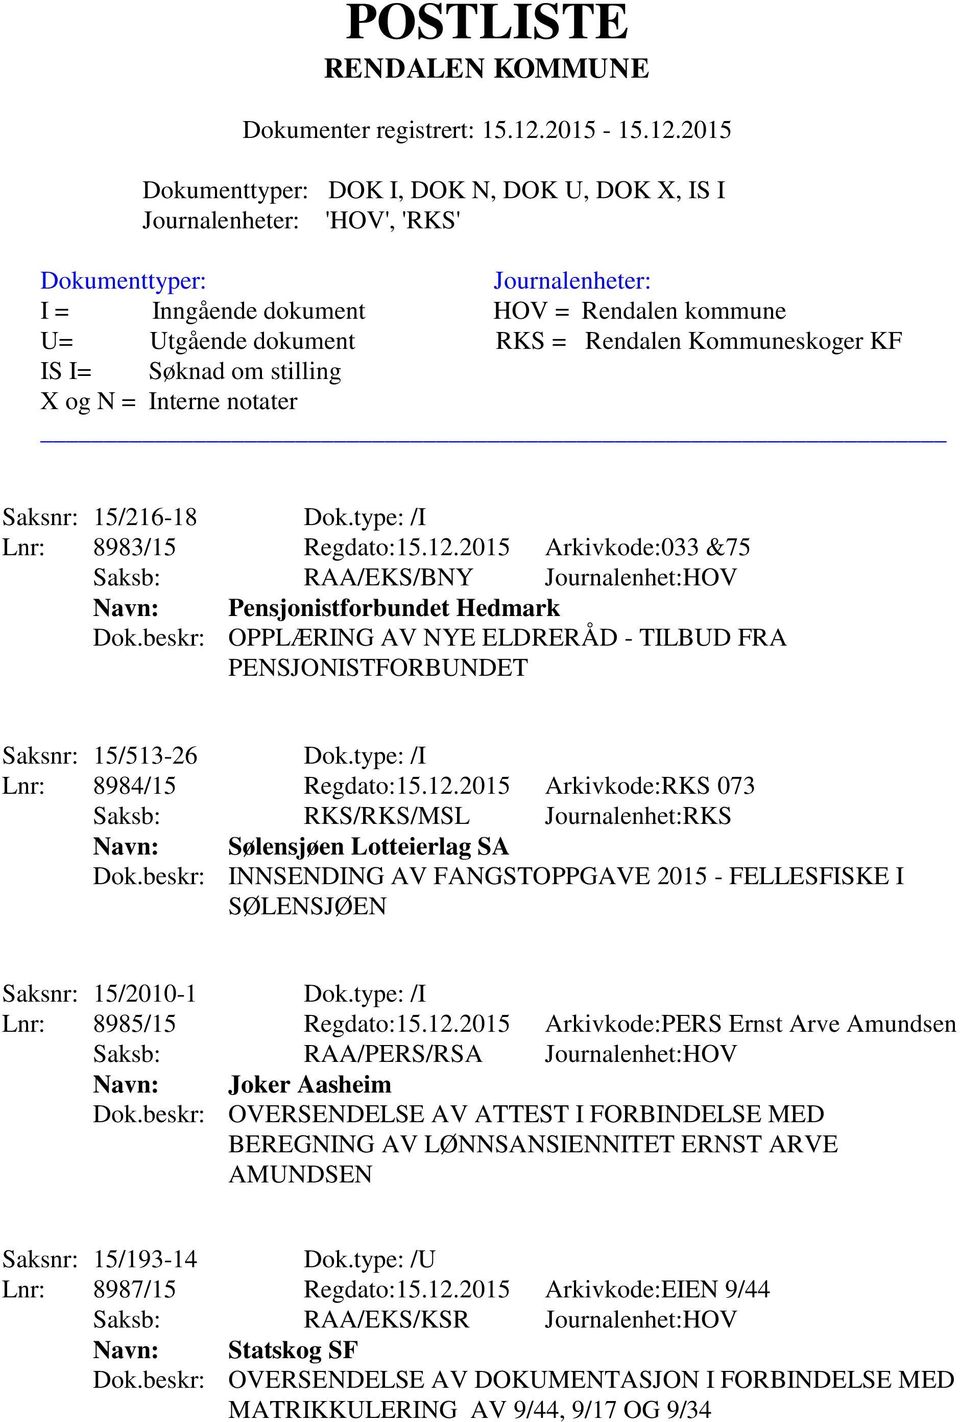 2015 Arkivkode:RKS 073 Saksb: RKS/RKS/MSL Journalenhet:RKS Navn: Sølensjøen Lotteierlag SA Dok.beskr: INNSENDING AV FANGSTOPPGAVE 2015 - FELLESFISKE I SØLENSJØEN Saksnr: 15/2010-1 Dok.